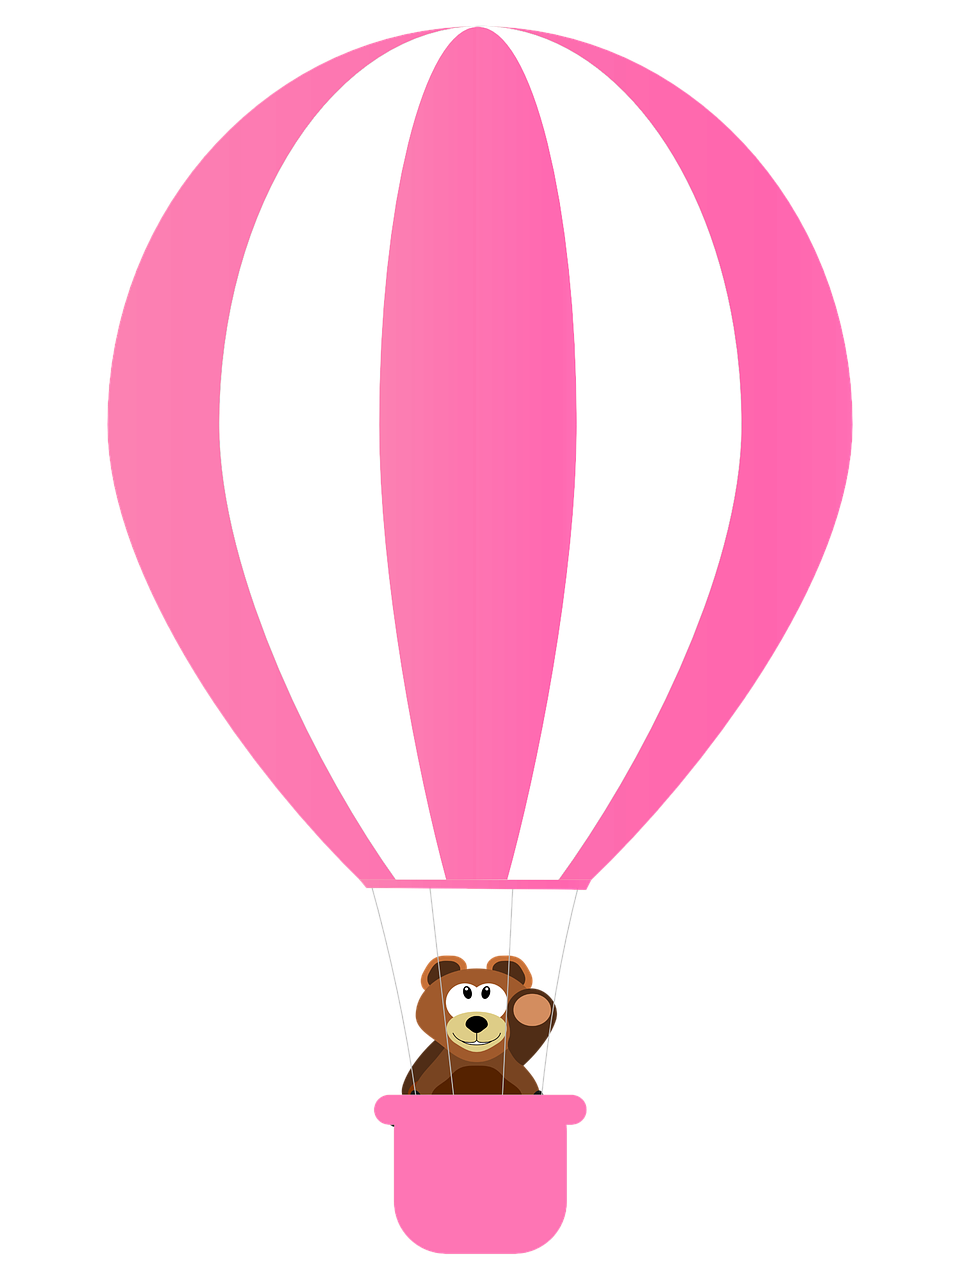 bear rosa balloon free photo